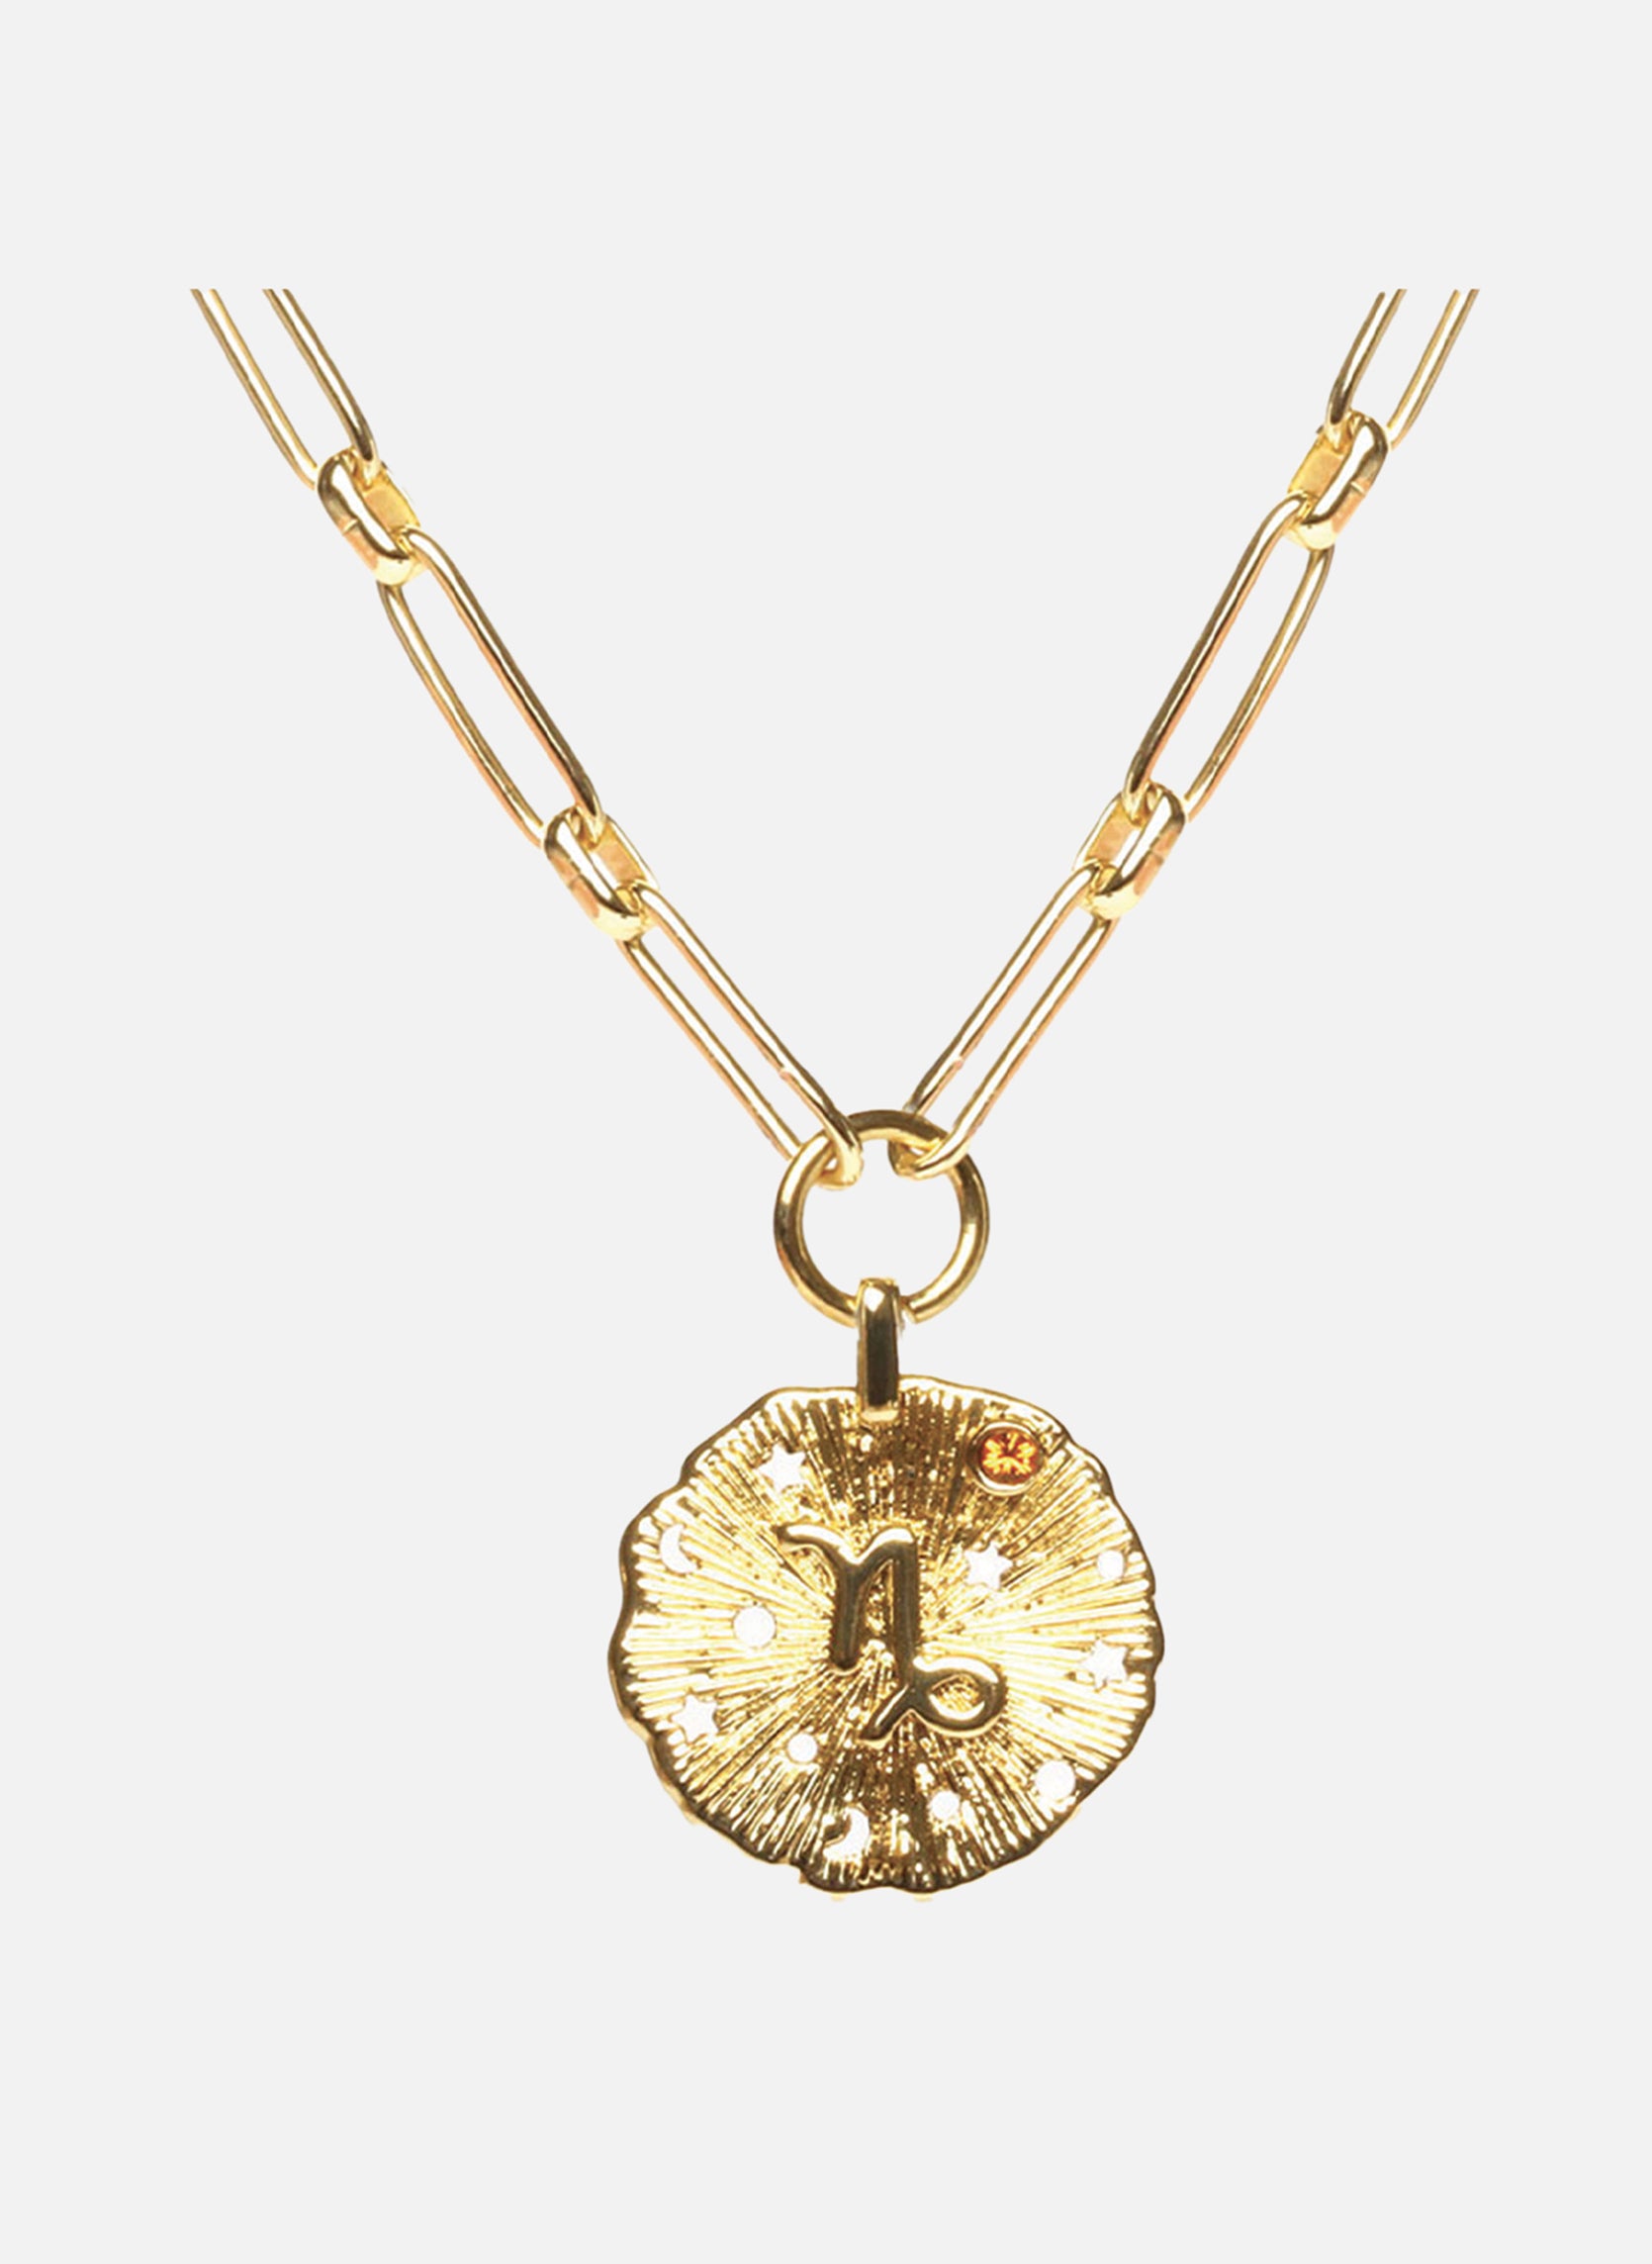 Astro chain necklace